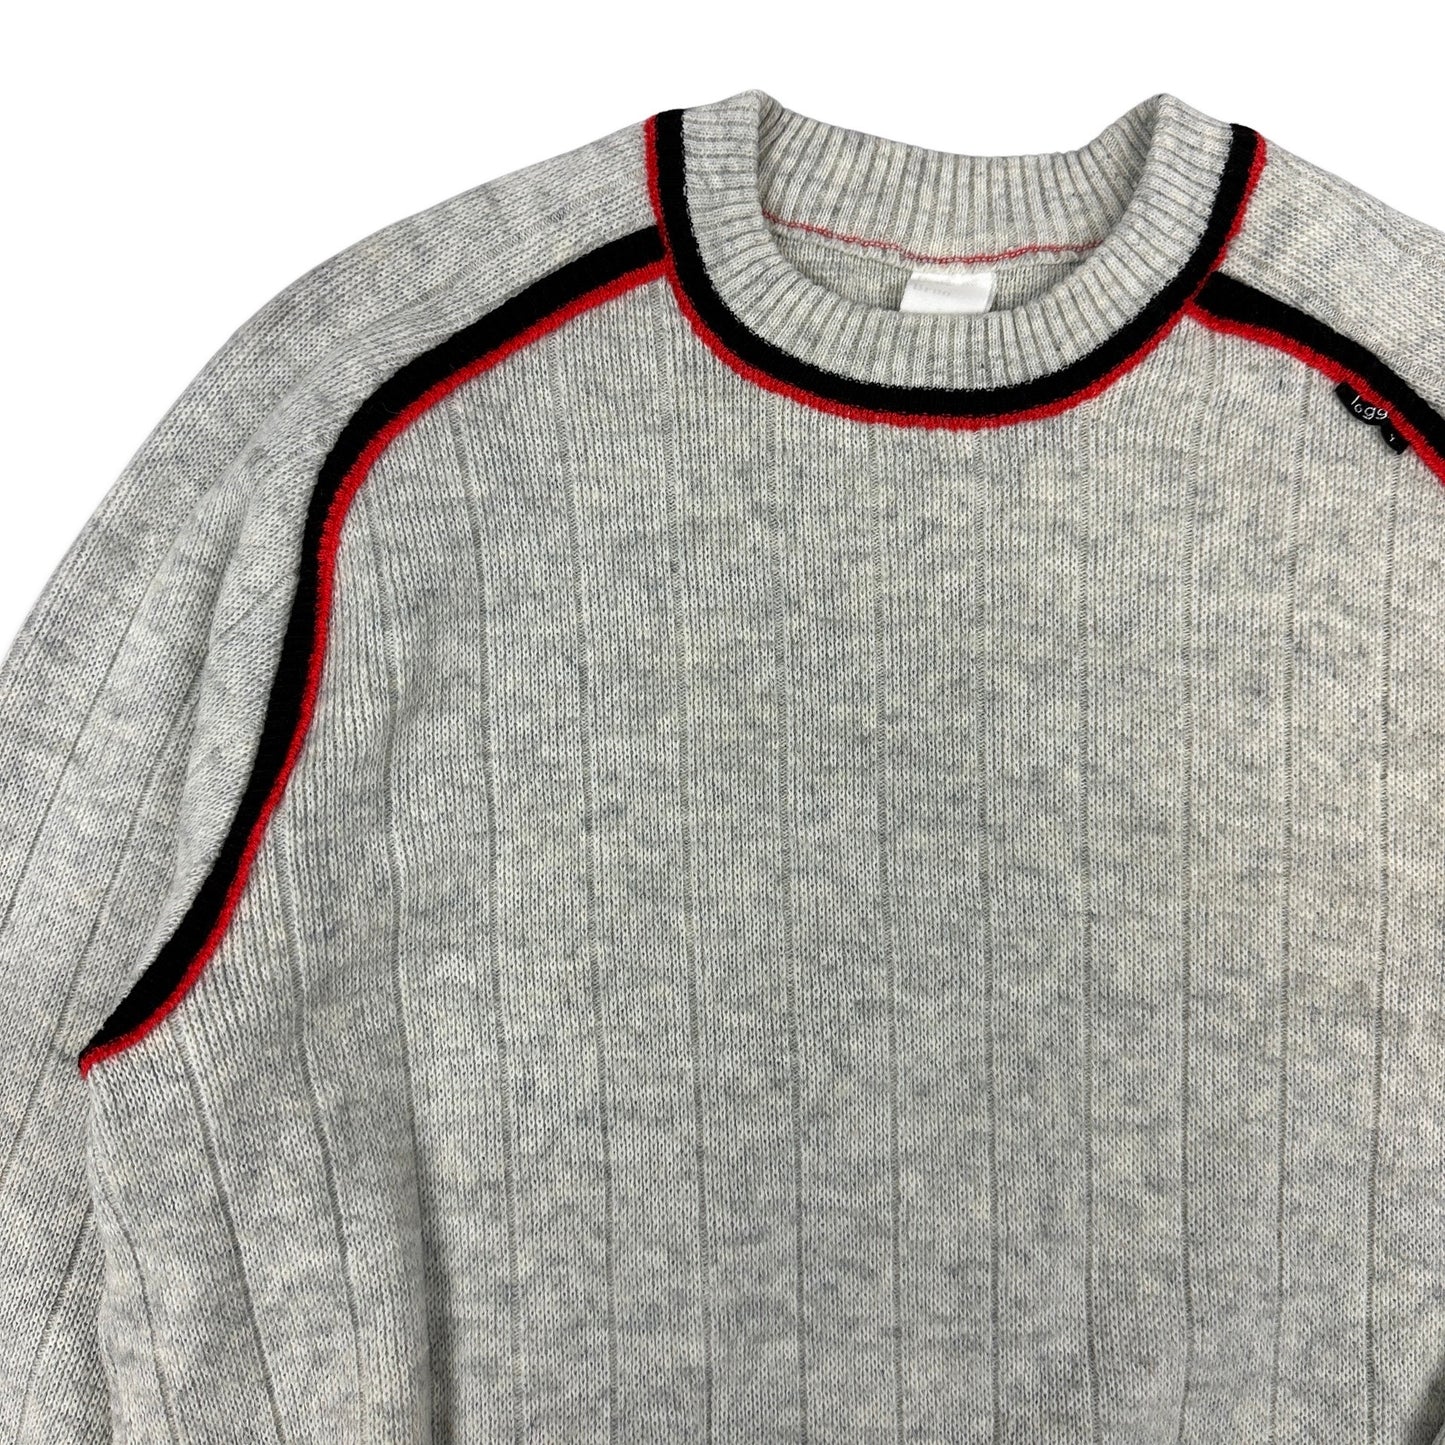 Vintage 80s Patterned Grey Wool Knit Jumper M